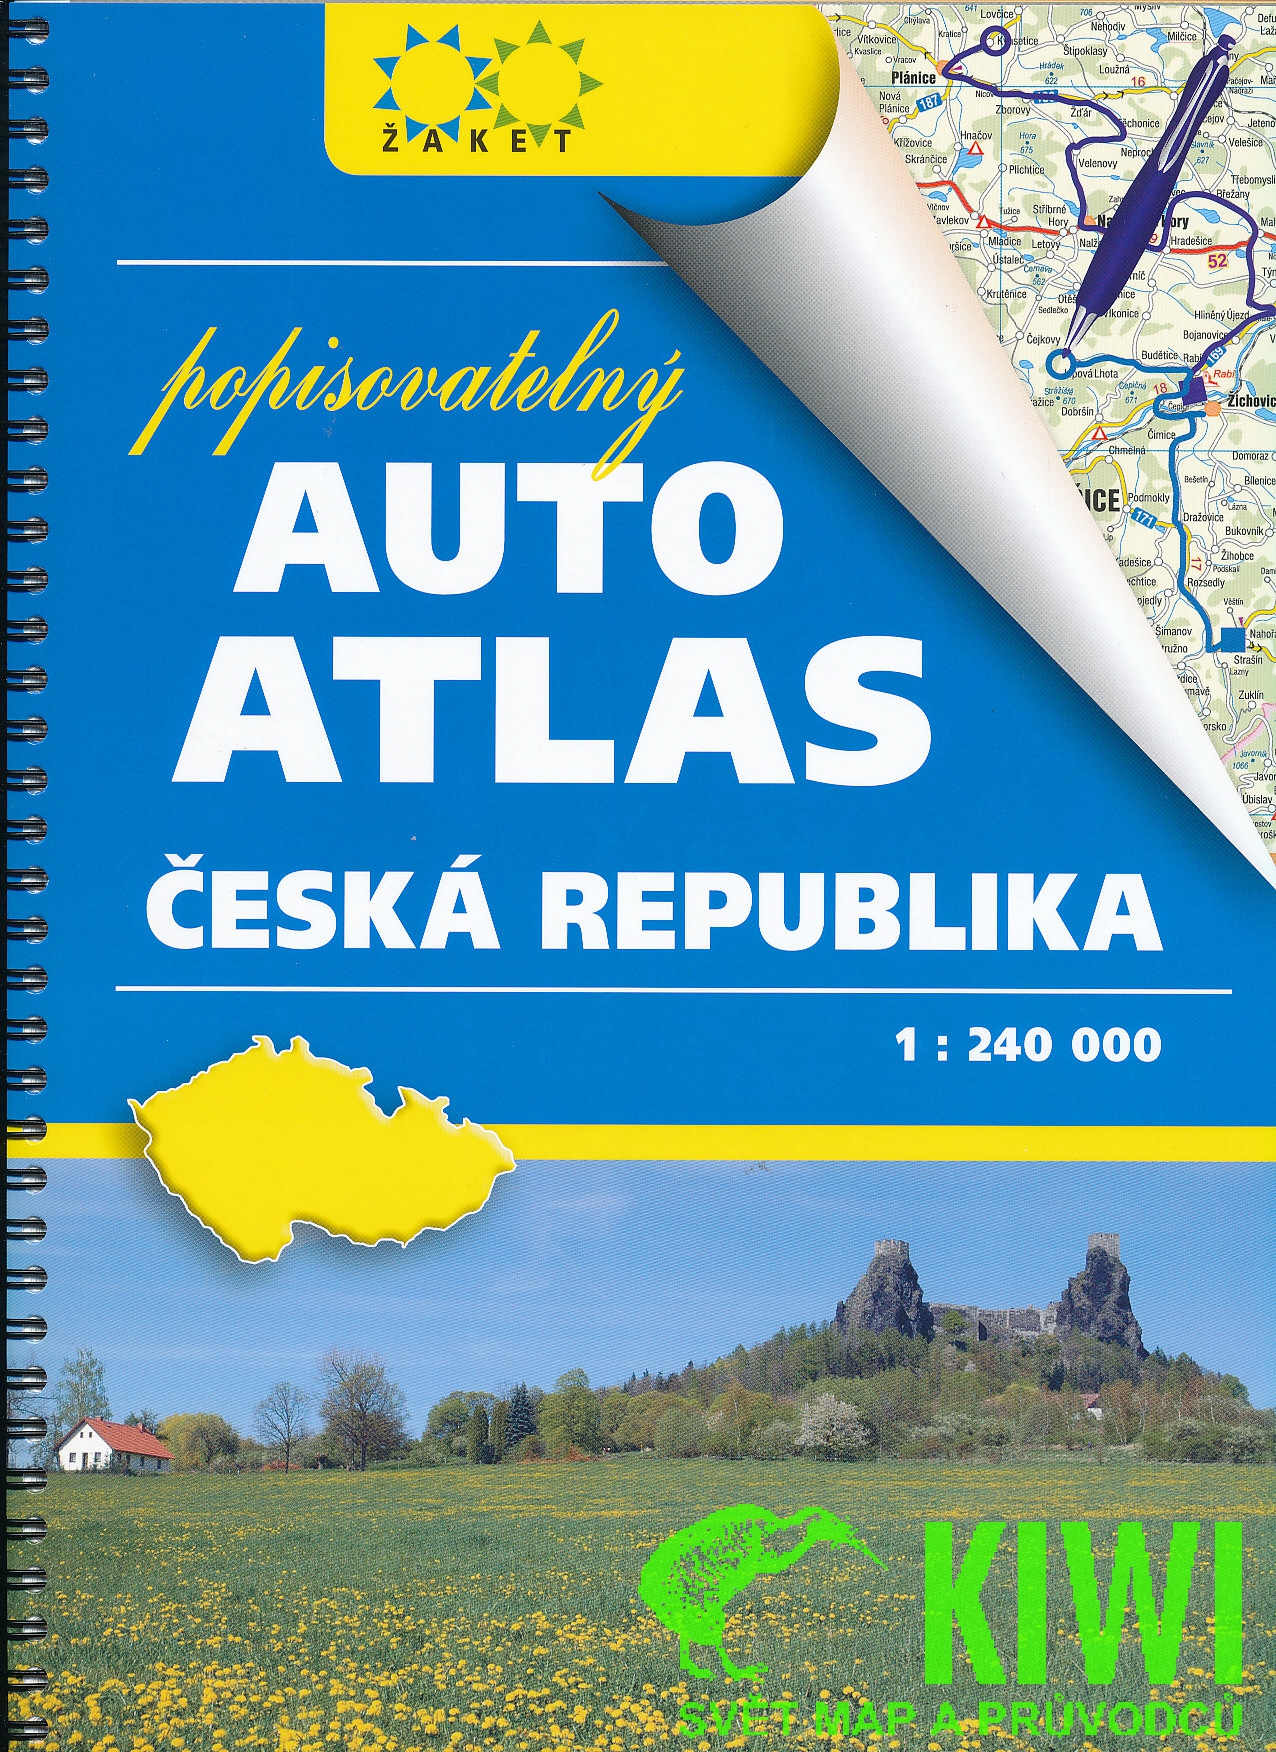 Žaket vydavatelství atlas ČR 1:240 t. A4 popisovatelný